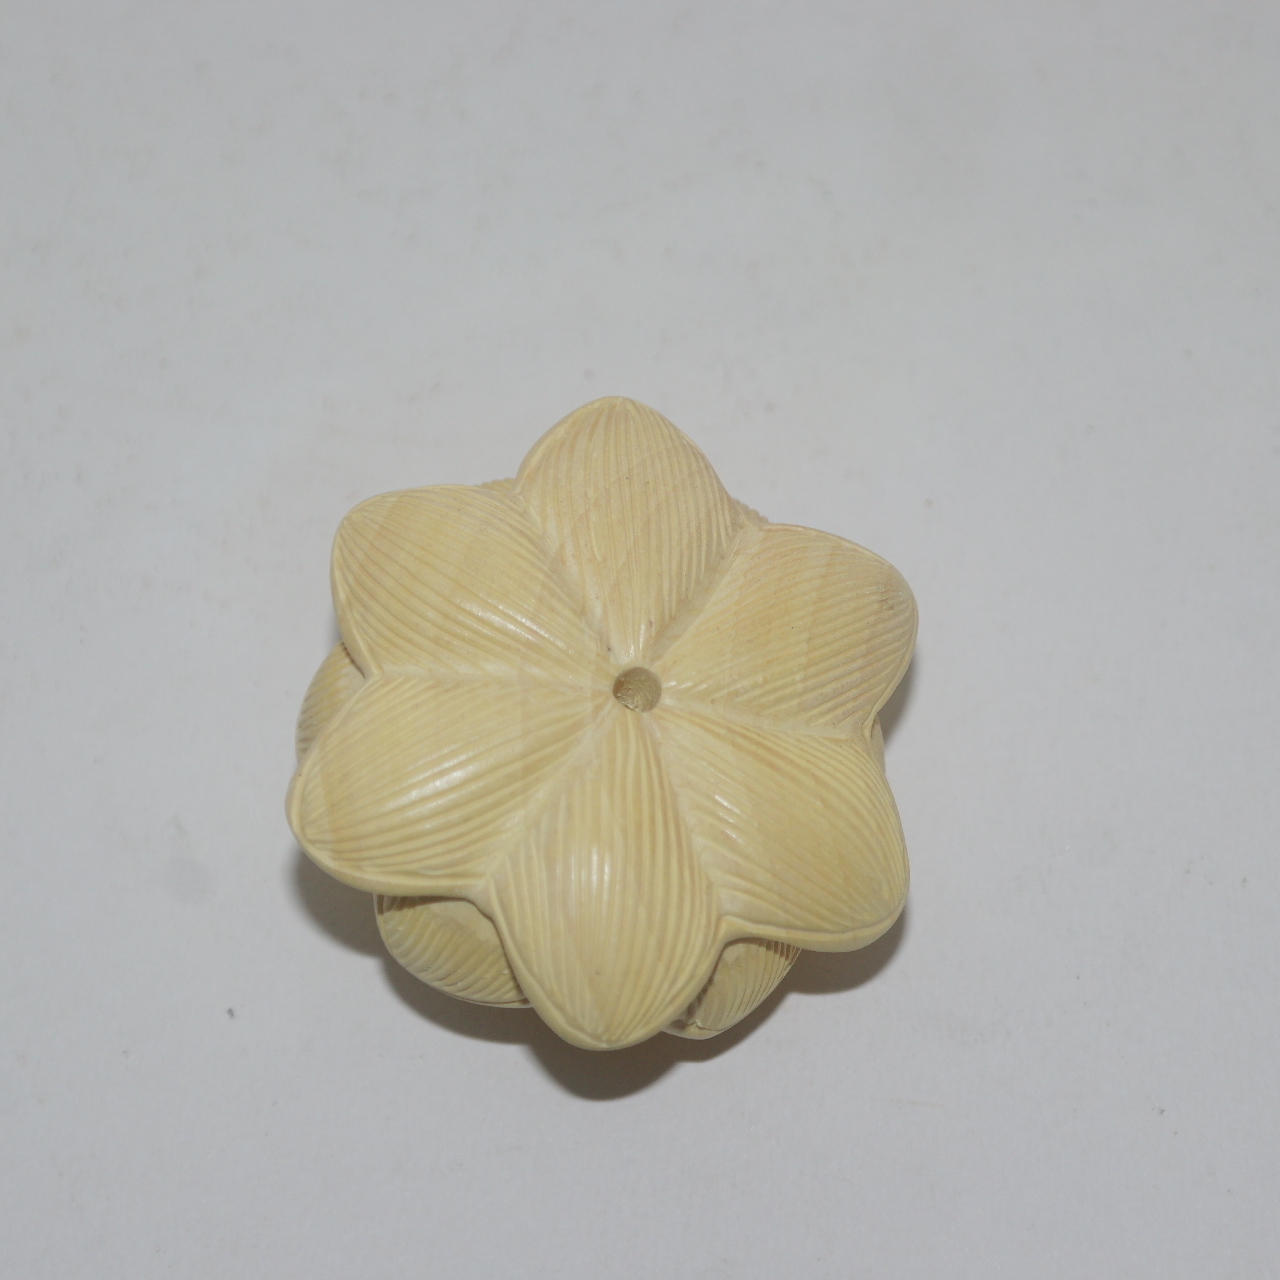 회양목나무를 정교하게 조각한 연꽃 조각품